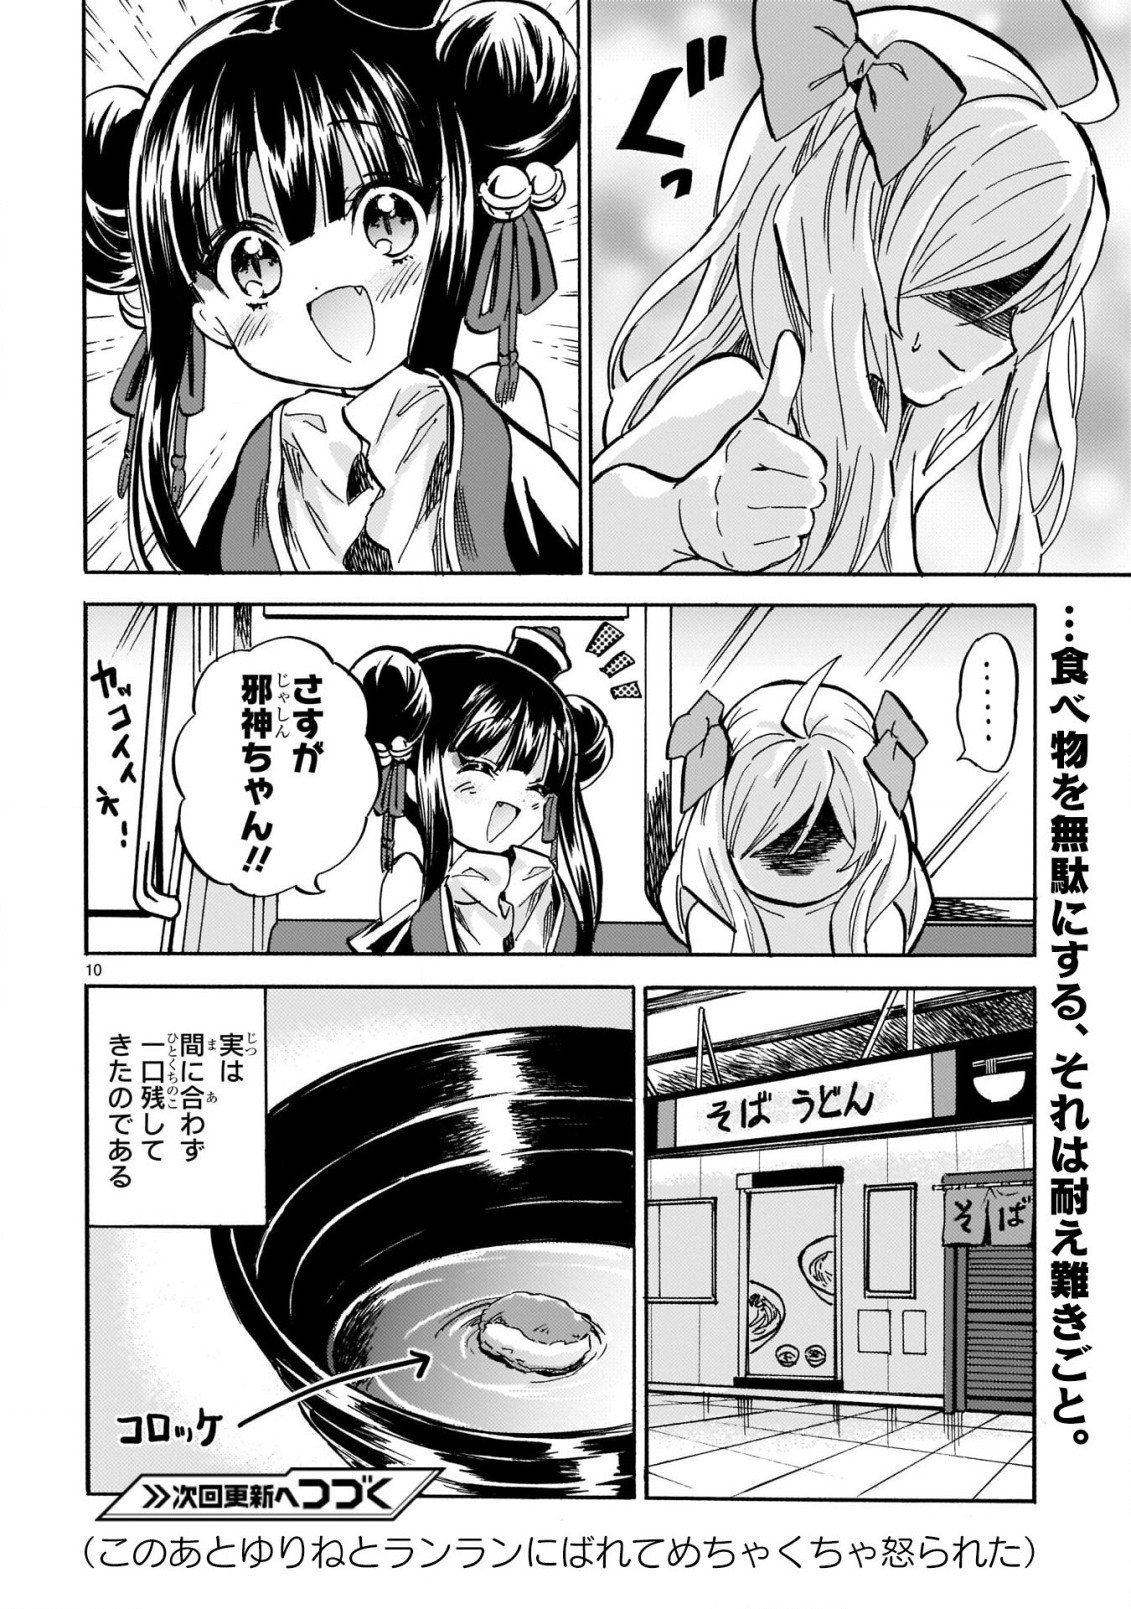 Jashin-chan Dropkick - Chapter 211 - Page 10